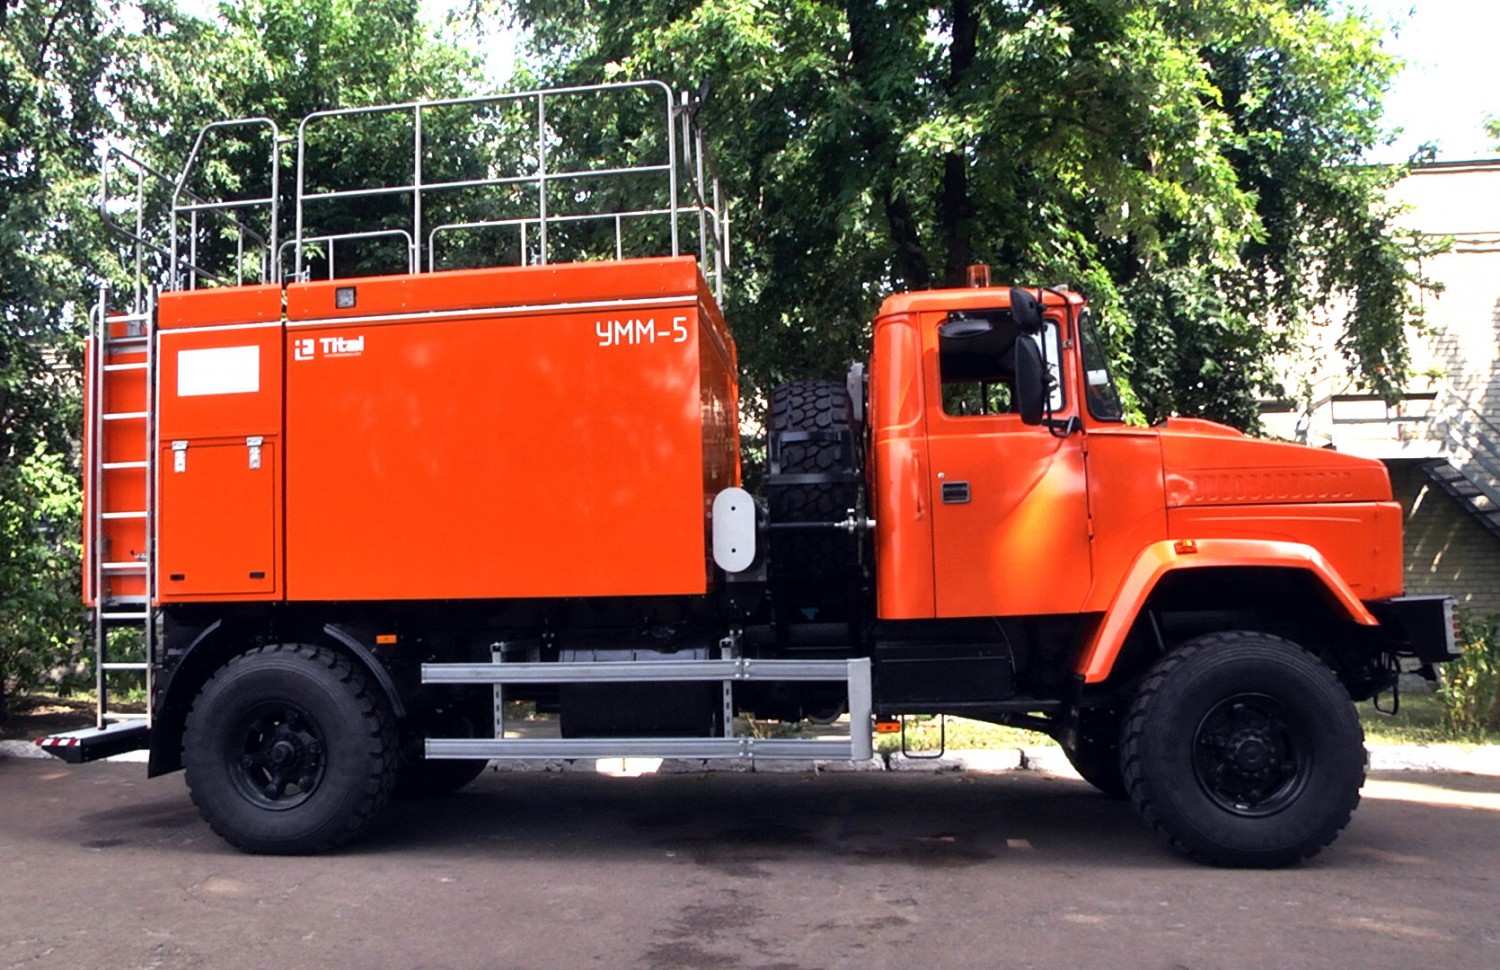 Для Єристівського ГЗК: мобільна миюча установка (УММ) на базі автомобільного шасі КрАЗ-5233НЕ